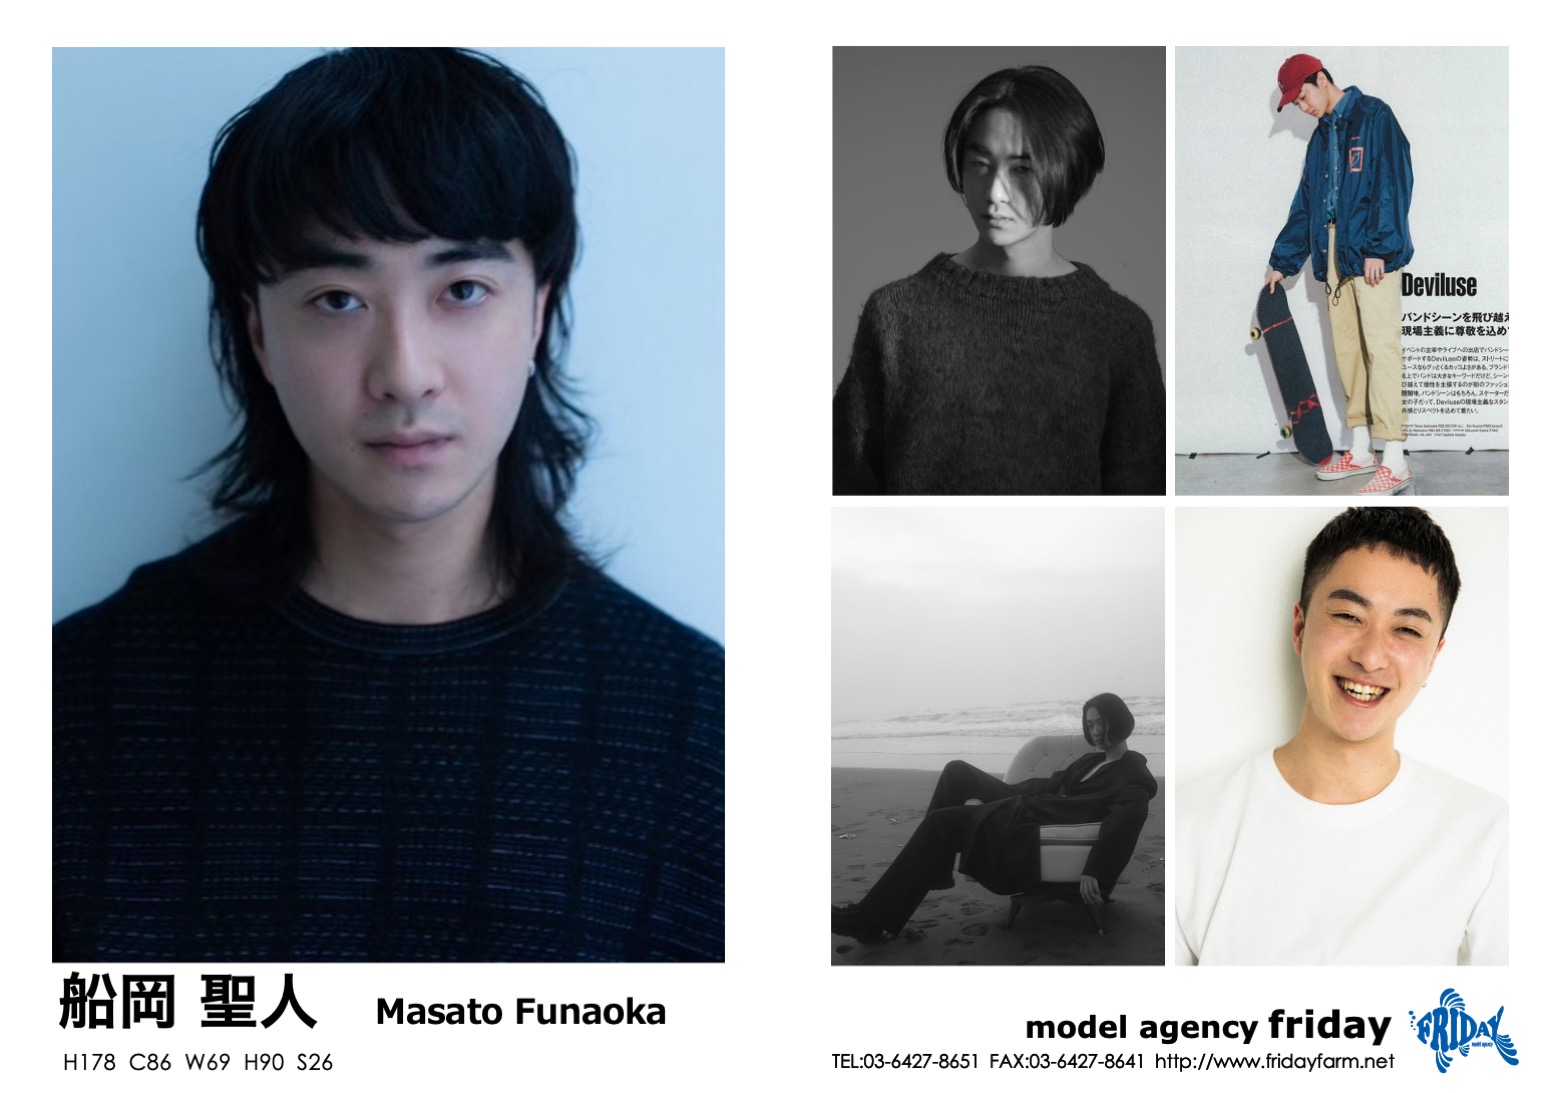 船岡 聖人 - Masato Funaoka | model agency friday